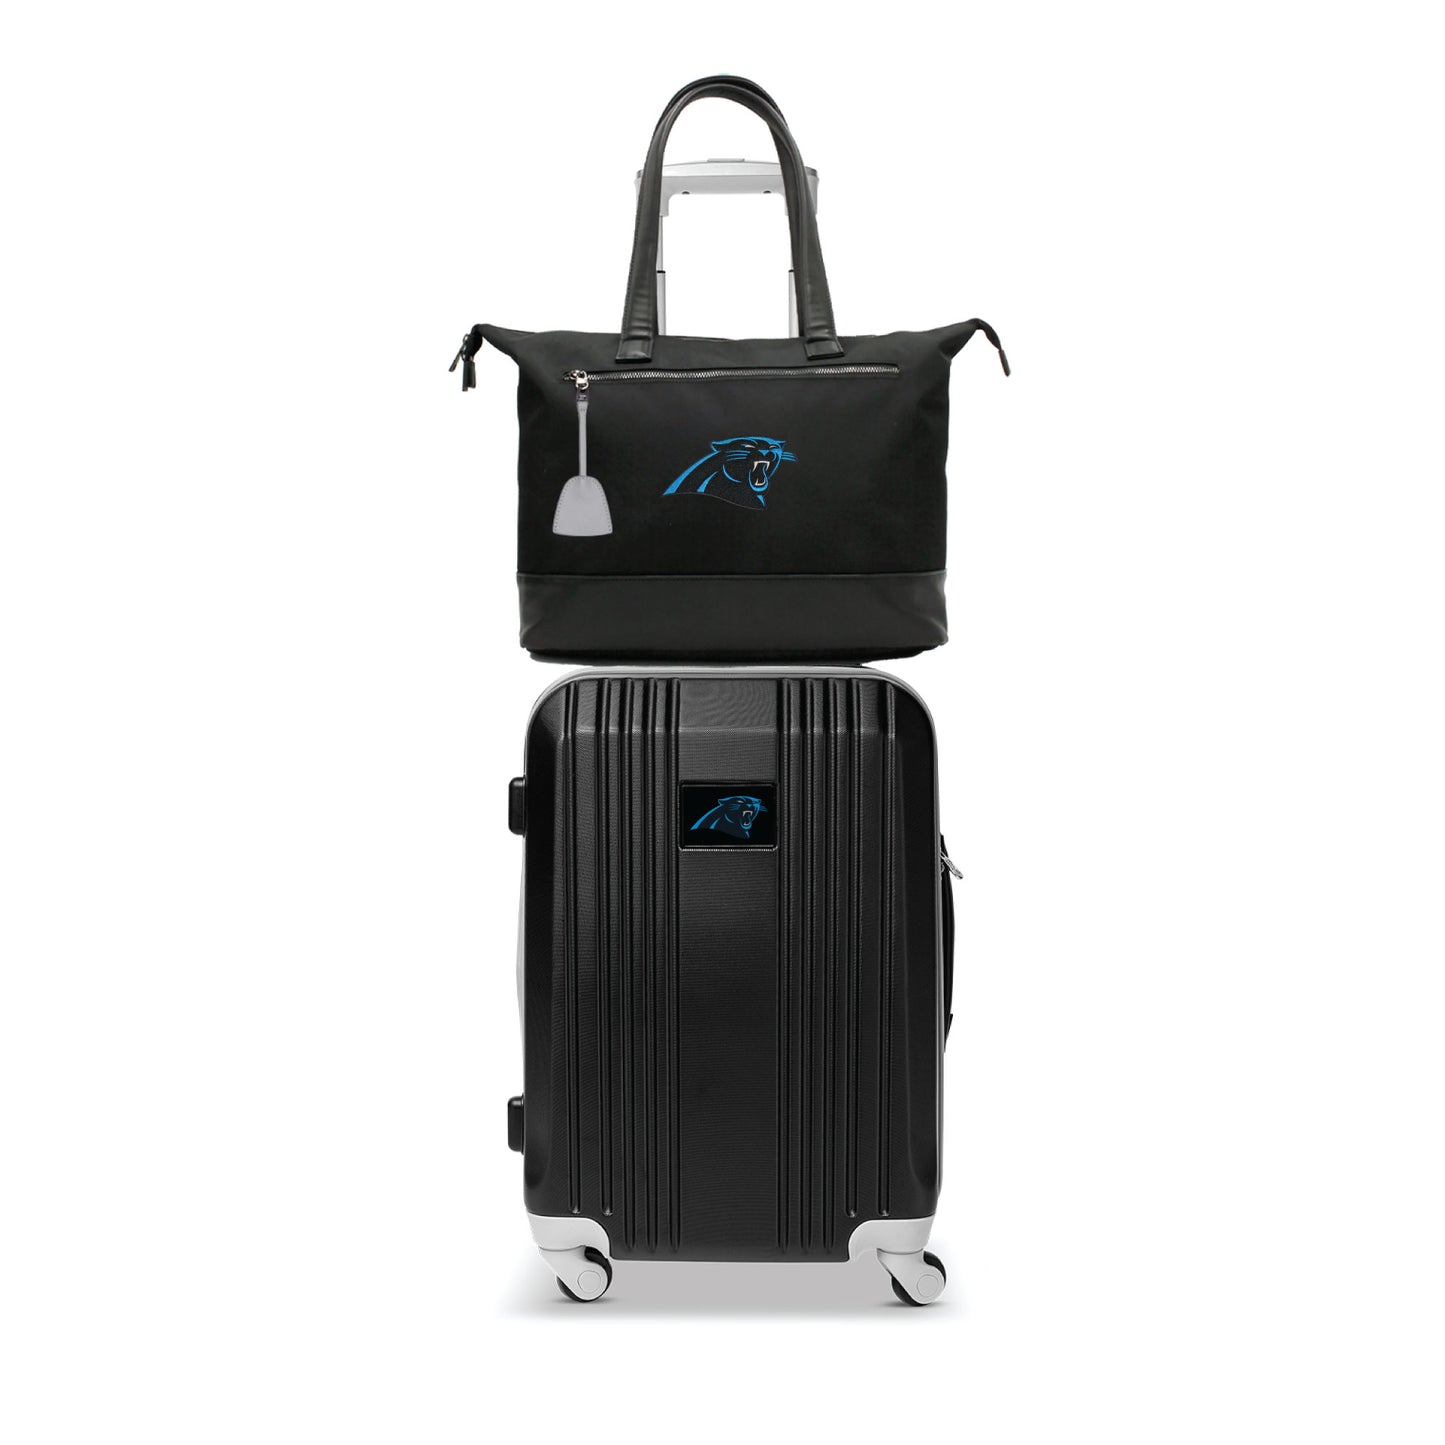 Carolina Panthers Premium Laptop Tote Bag and Luggage Set